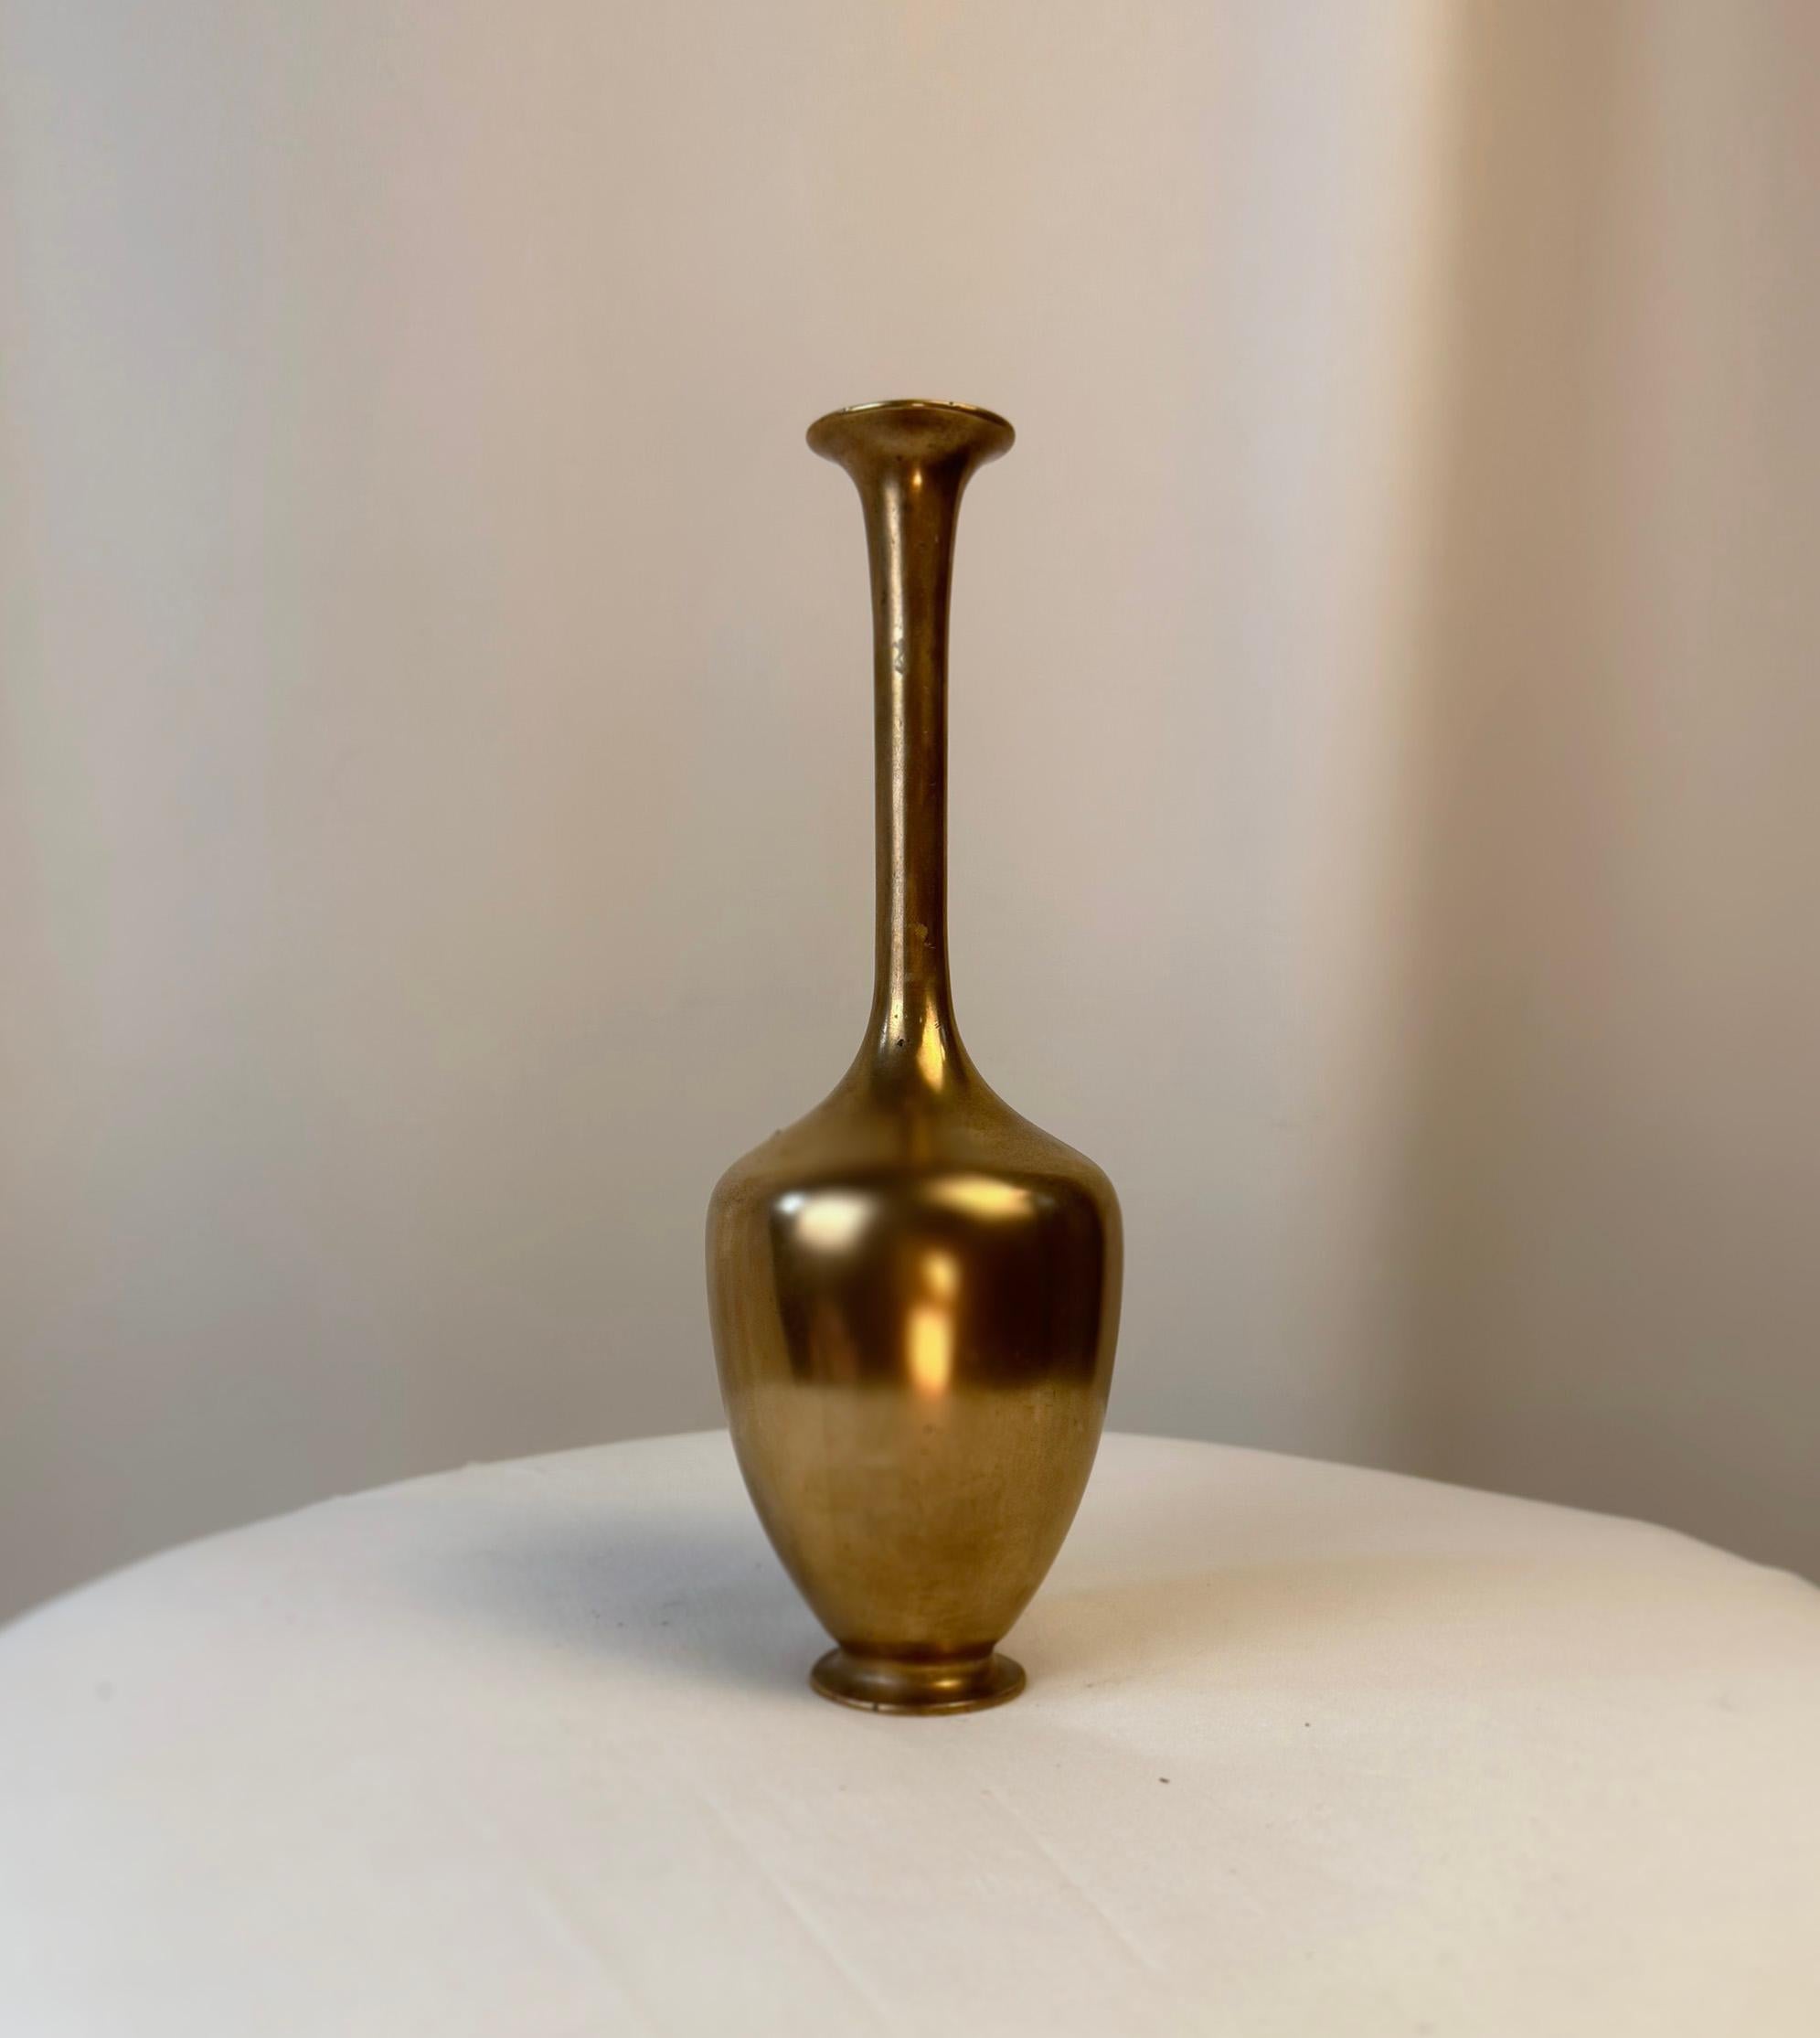 Vase en métal japonais, créé par le célèbre artisan Genryusai Seiya.

Ce vase exquis témoigne de l'artisanat raffiné de l'ère Meiji, période connue pour son épanouissement artistique au Japon. Fabriqué en cuivre, ce petit vase Ikebana incarne la